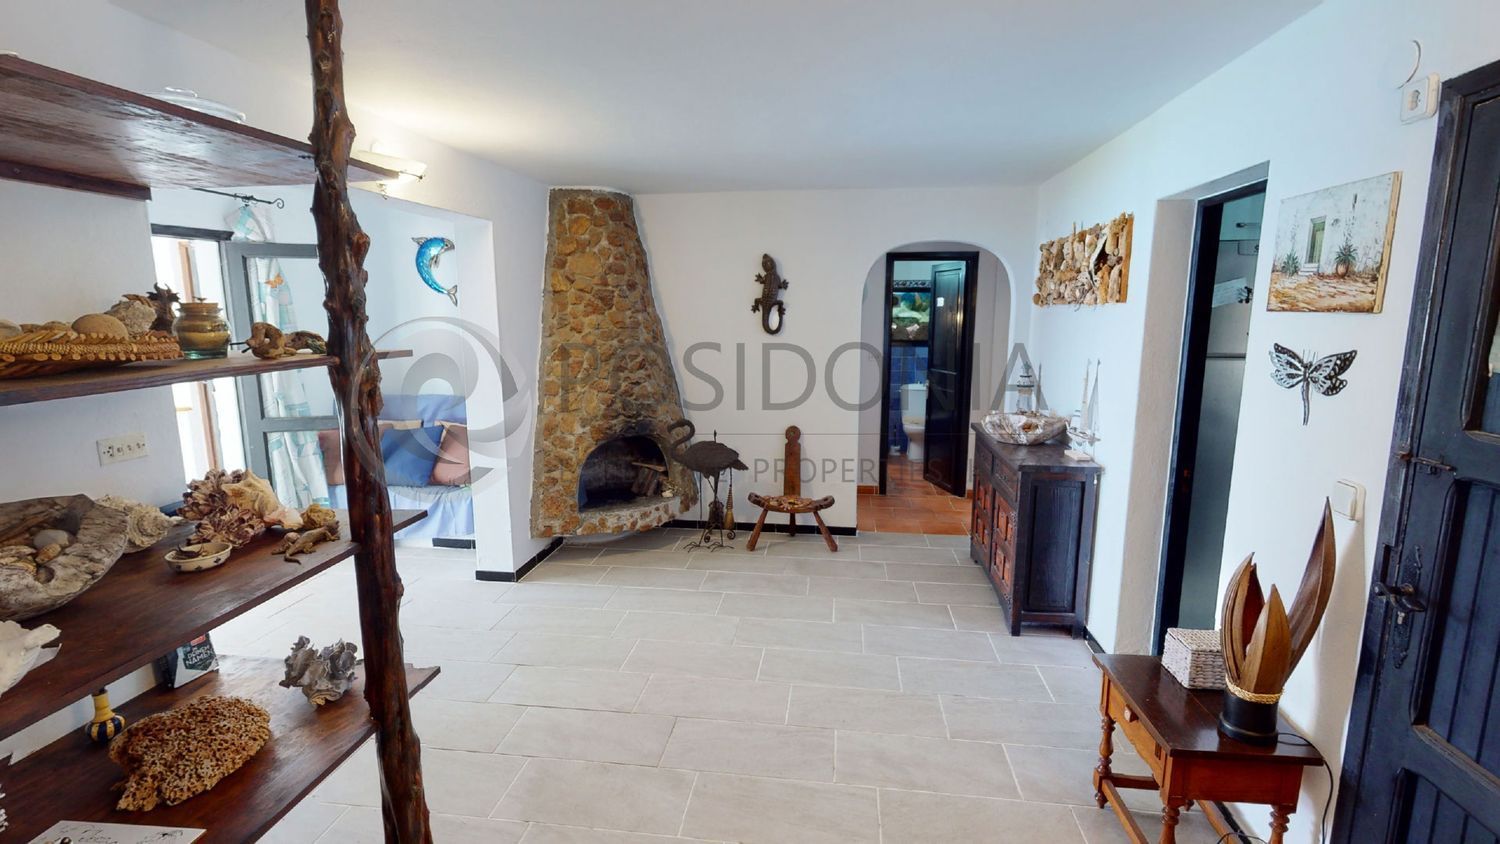 Casa en venta en primera línea de mar en Cap Negret, en Ibiza